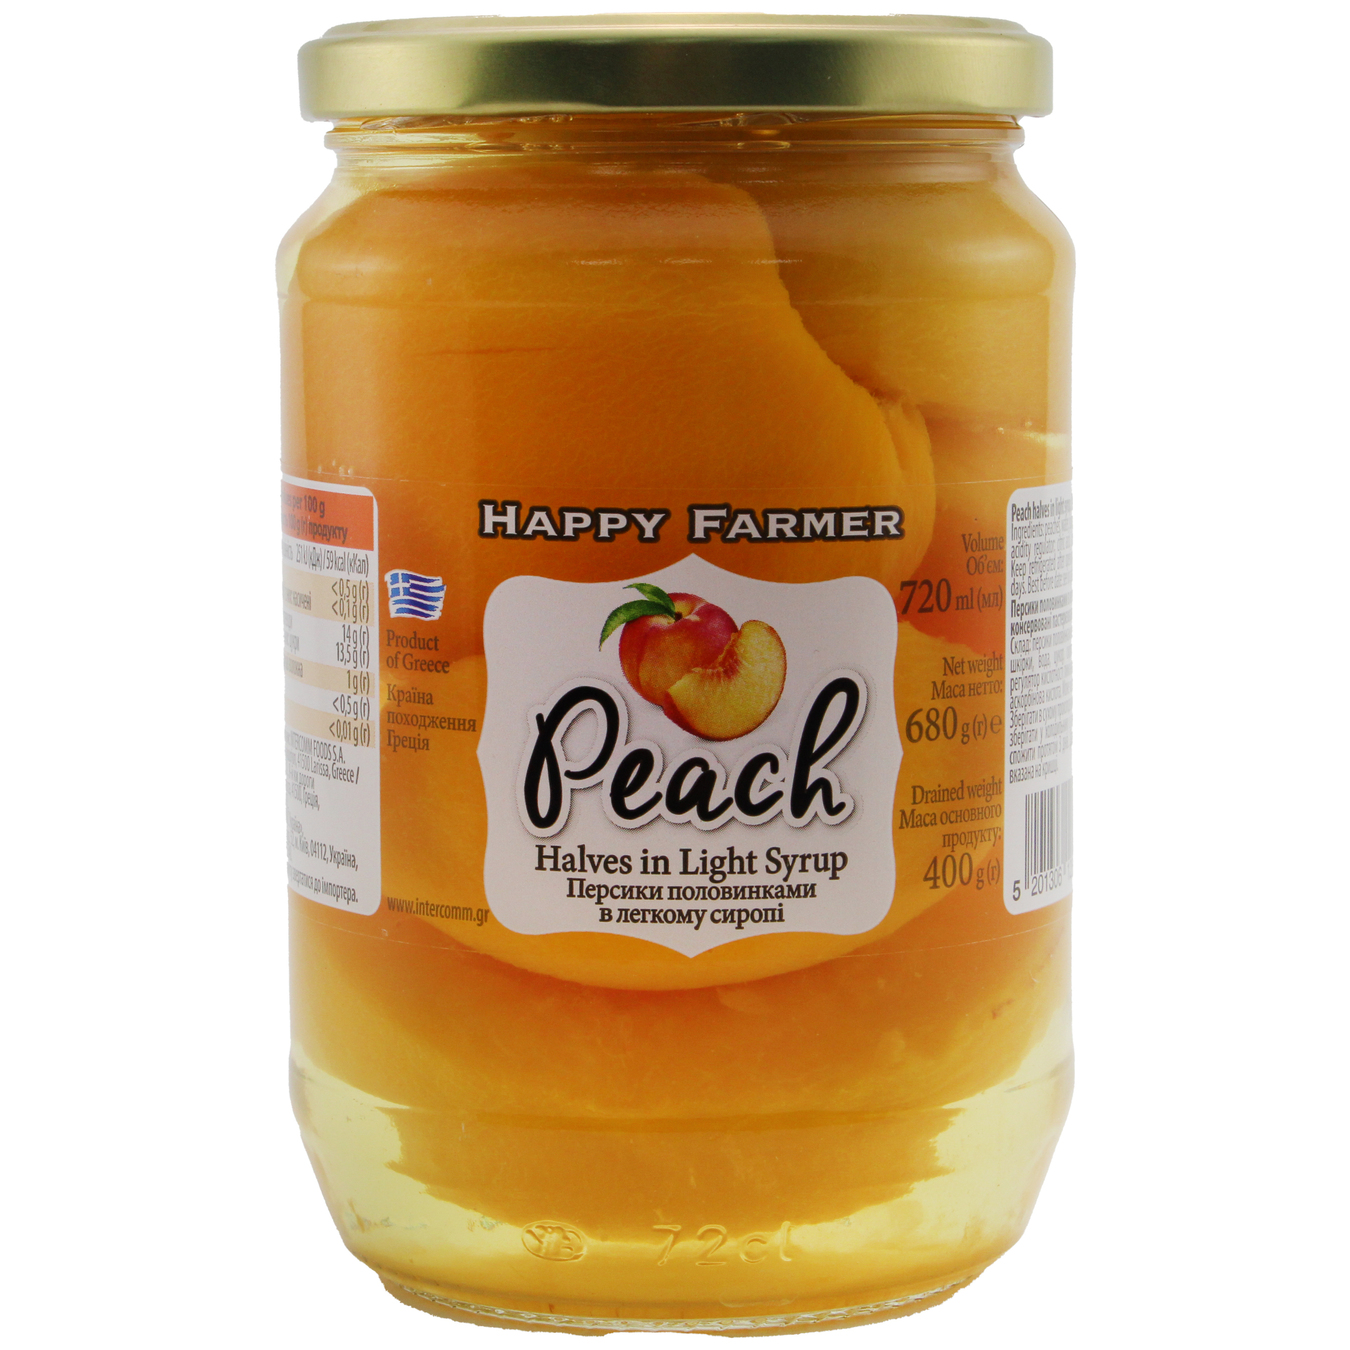 Персики Happy Farmer половинками в легком сиропе консервированные пастеризованные 720г